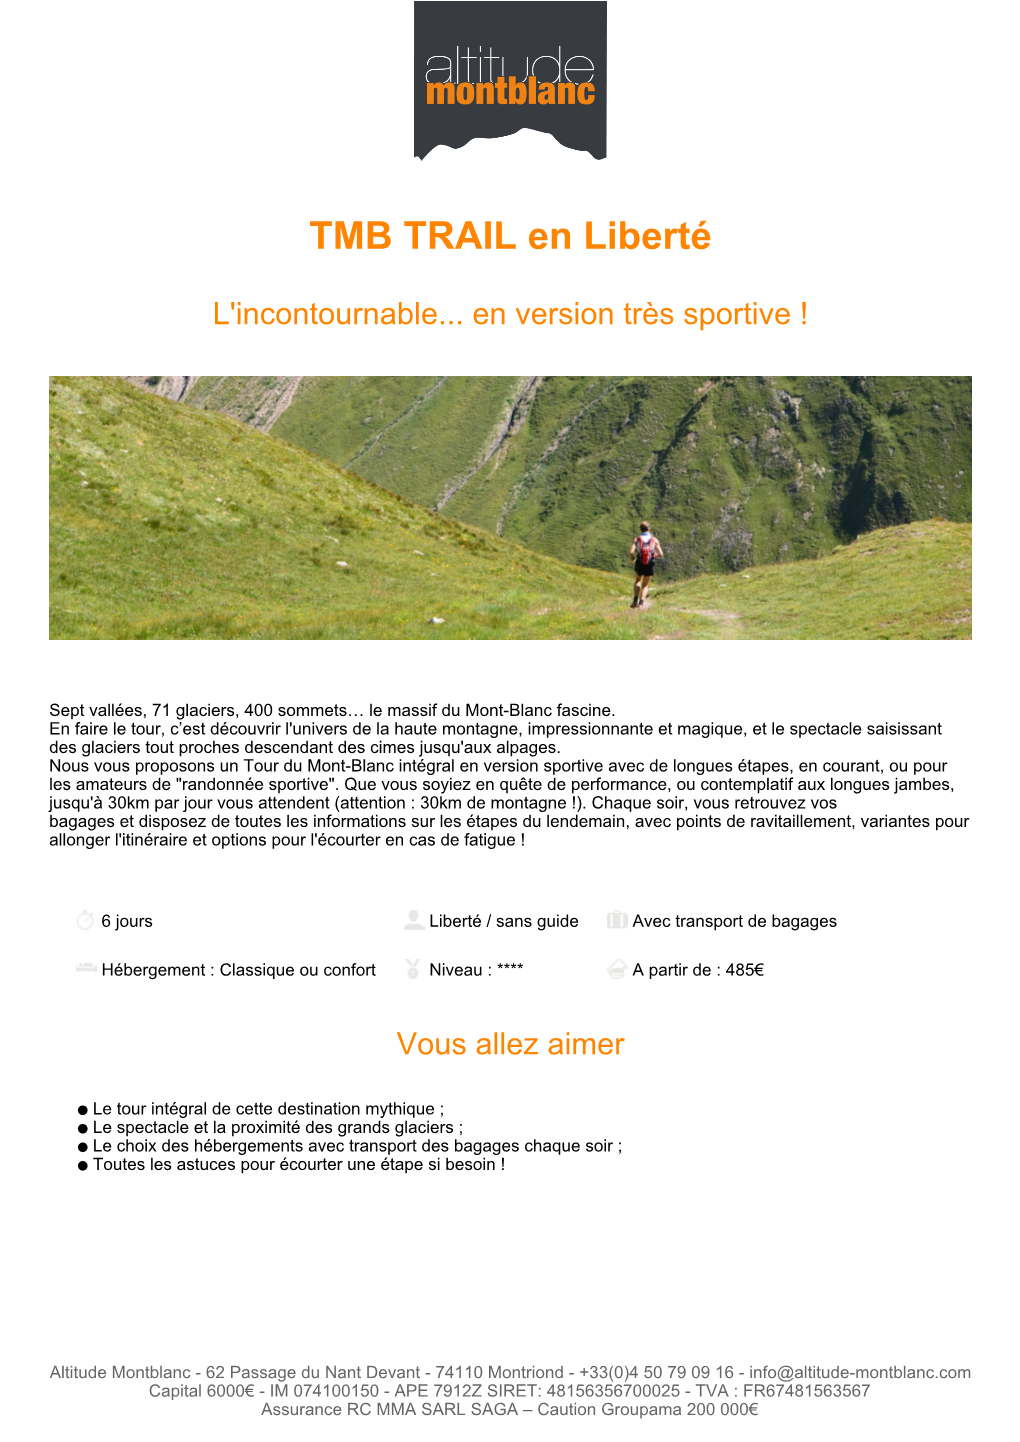 TMB TRAIL En Liberté